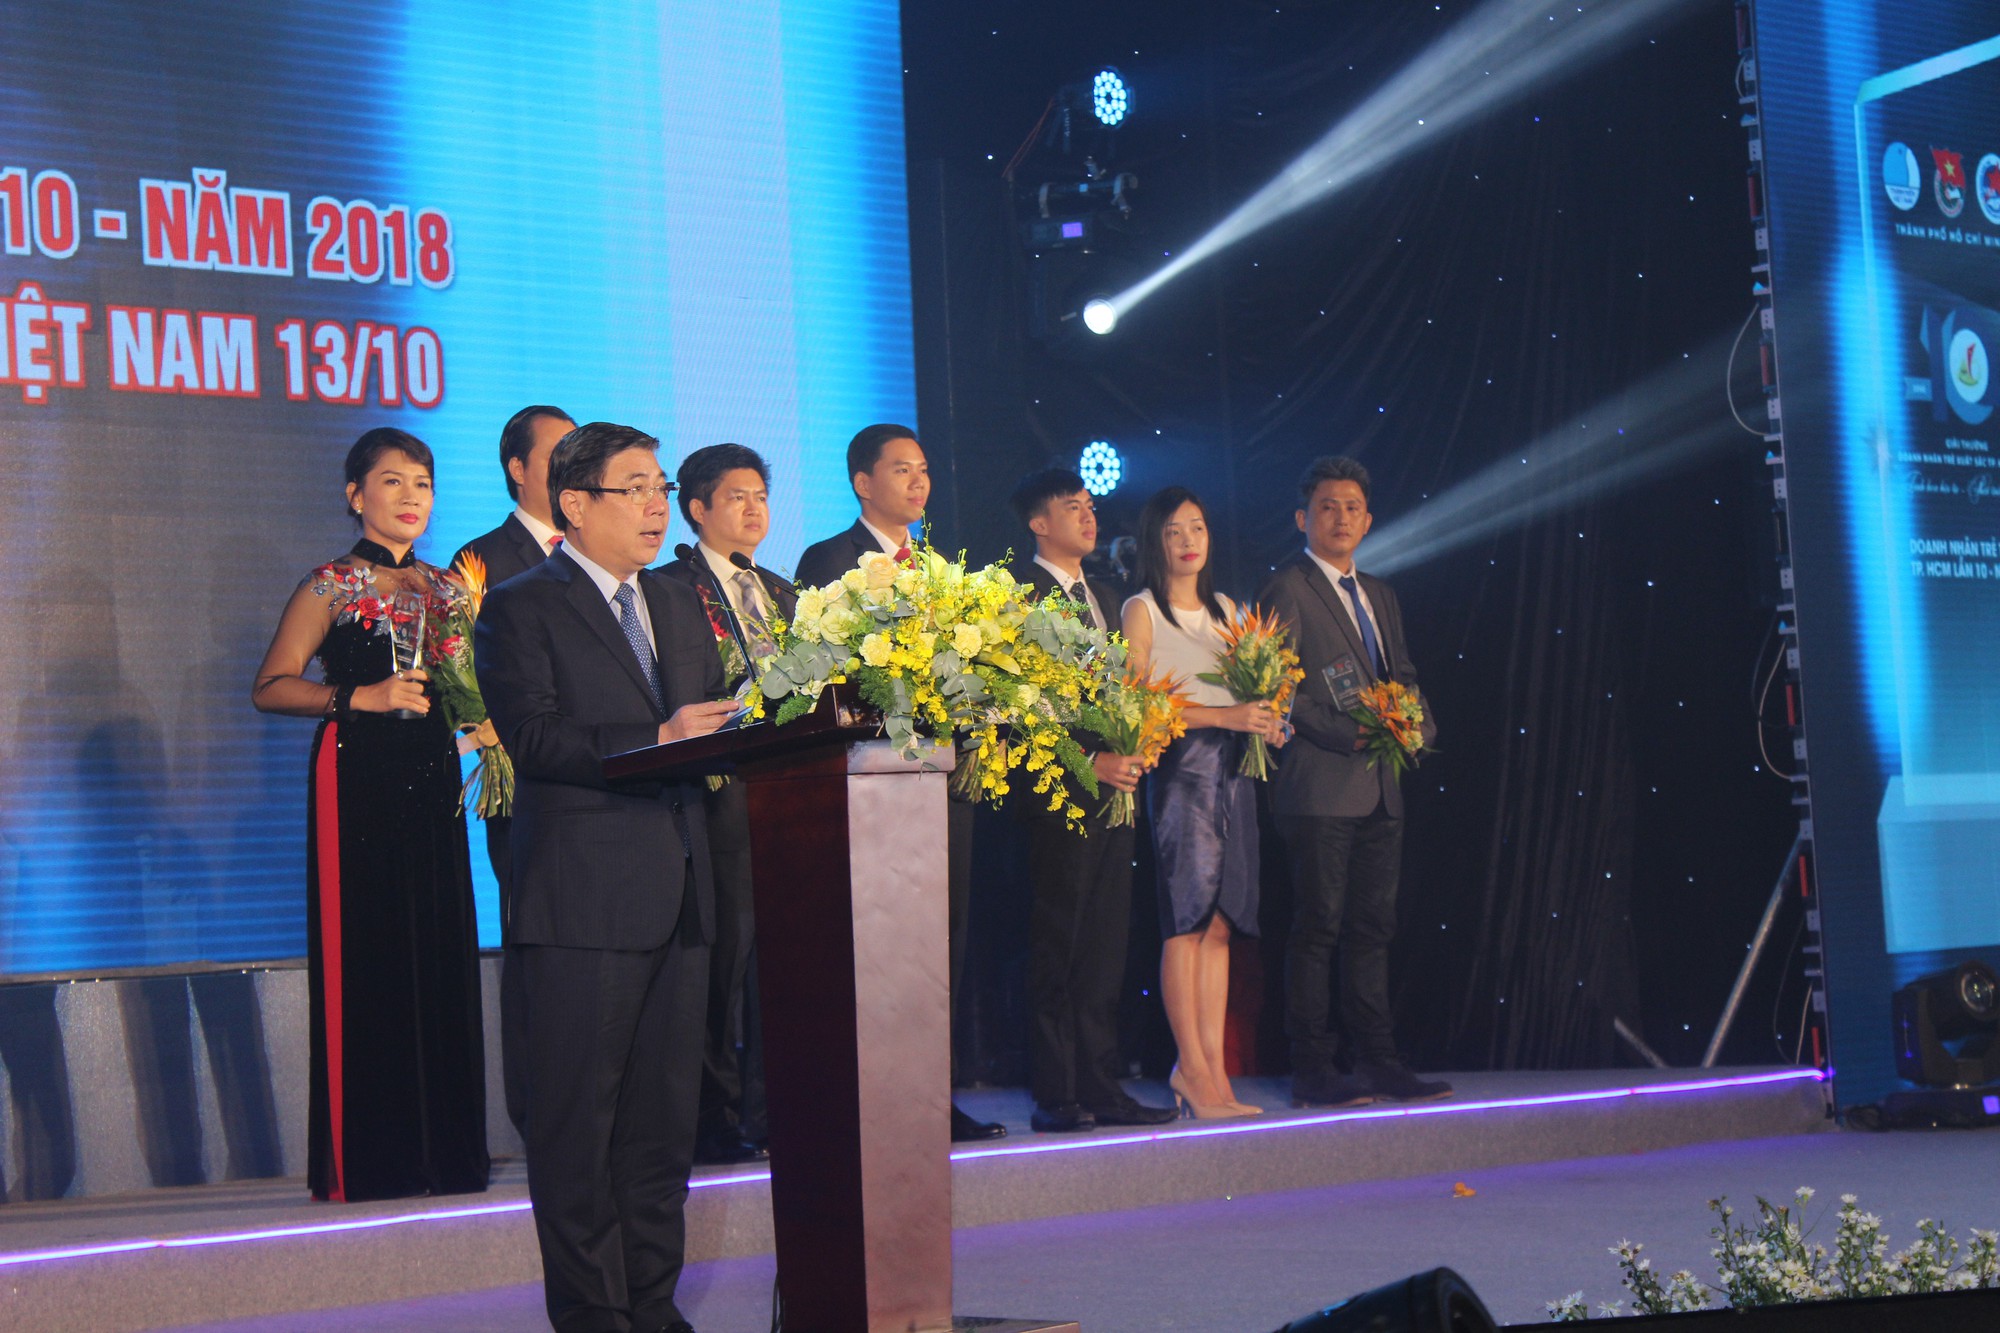 17 doanh nhân được vinh danh trong lễ trao giải thưởng “Doanh nhân trẻ xuất sắc Tp.HCM lần 10 năm 2018” - Ảnh 4.